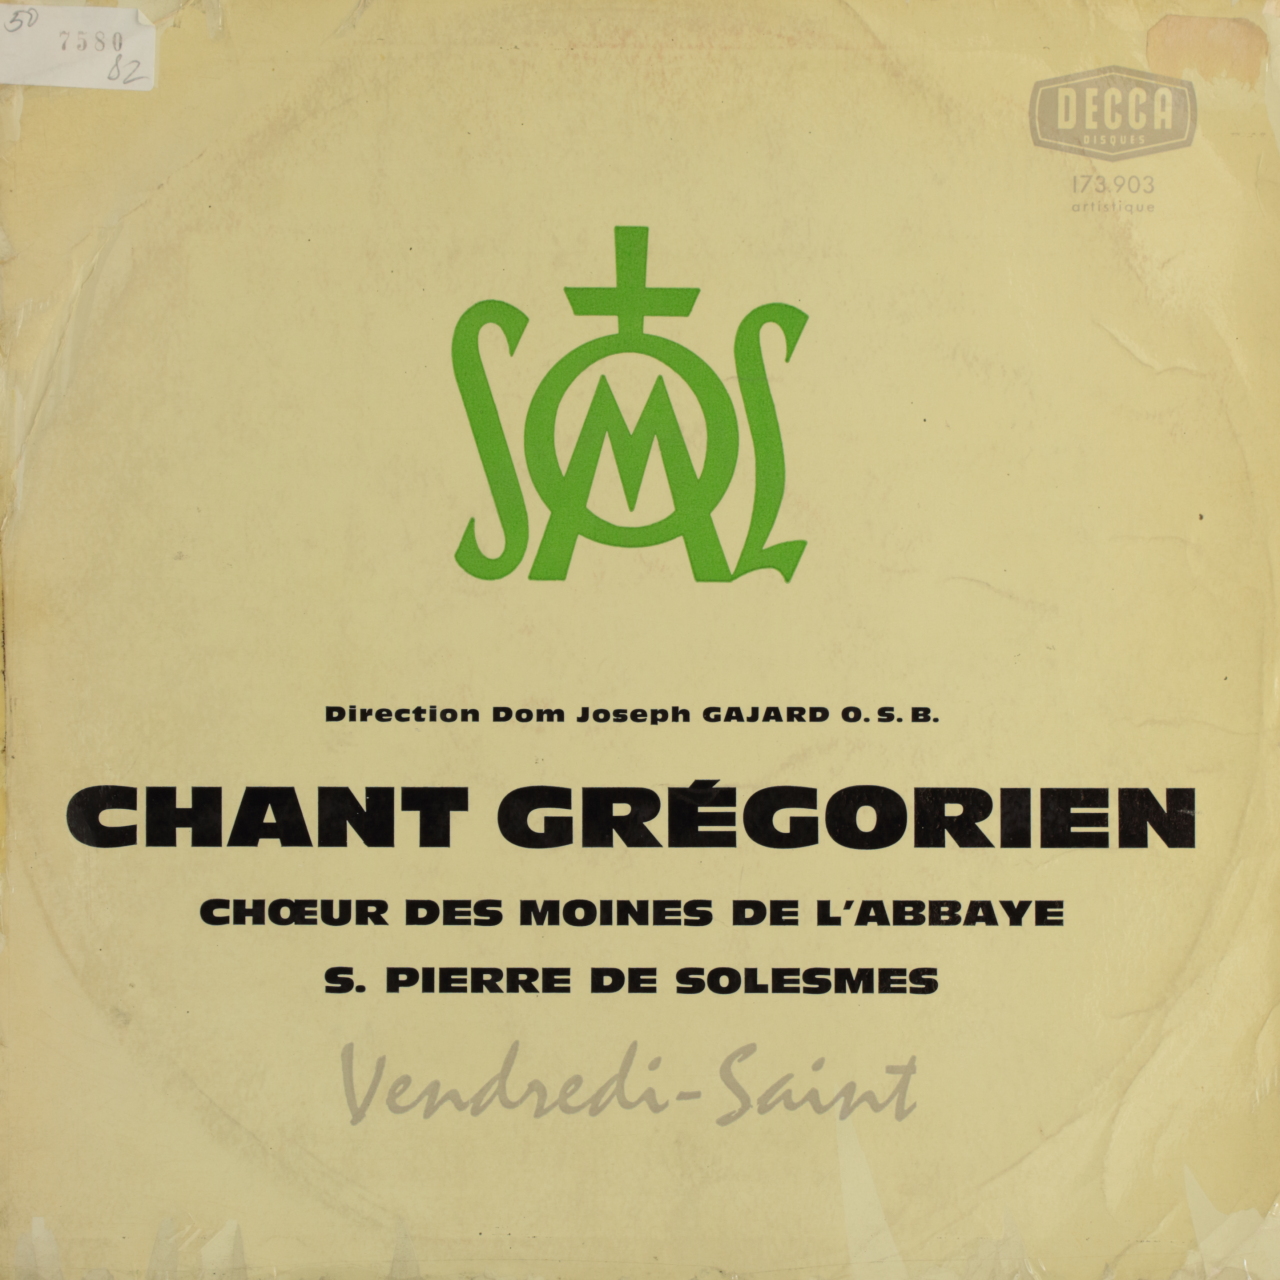 Chant grégorien - Vendredi Saint